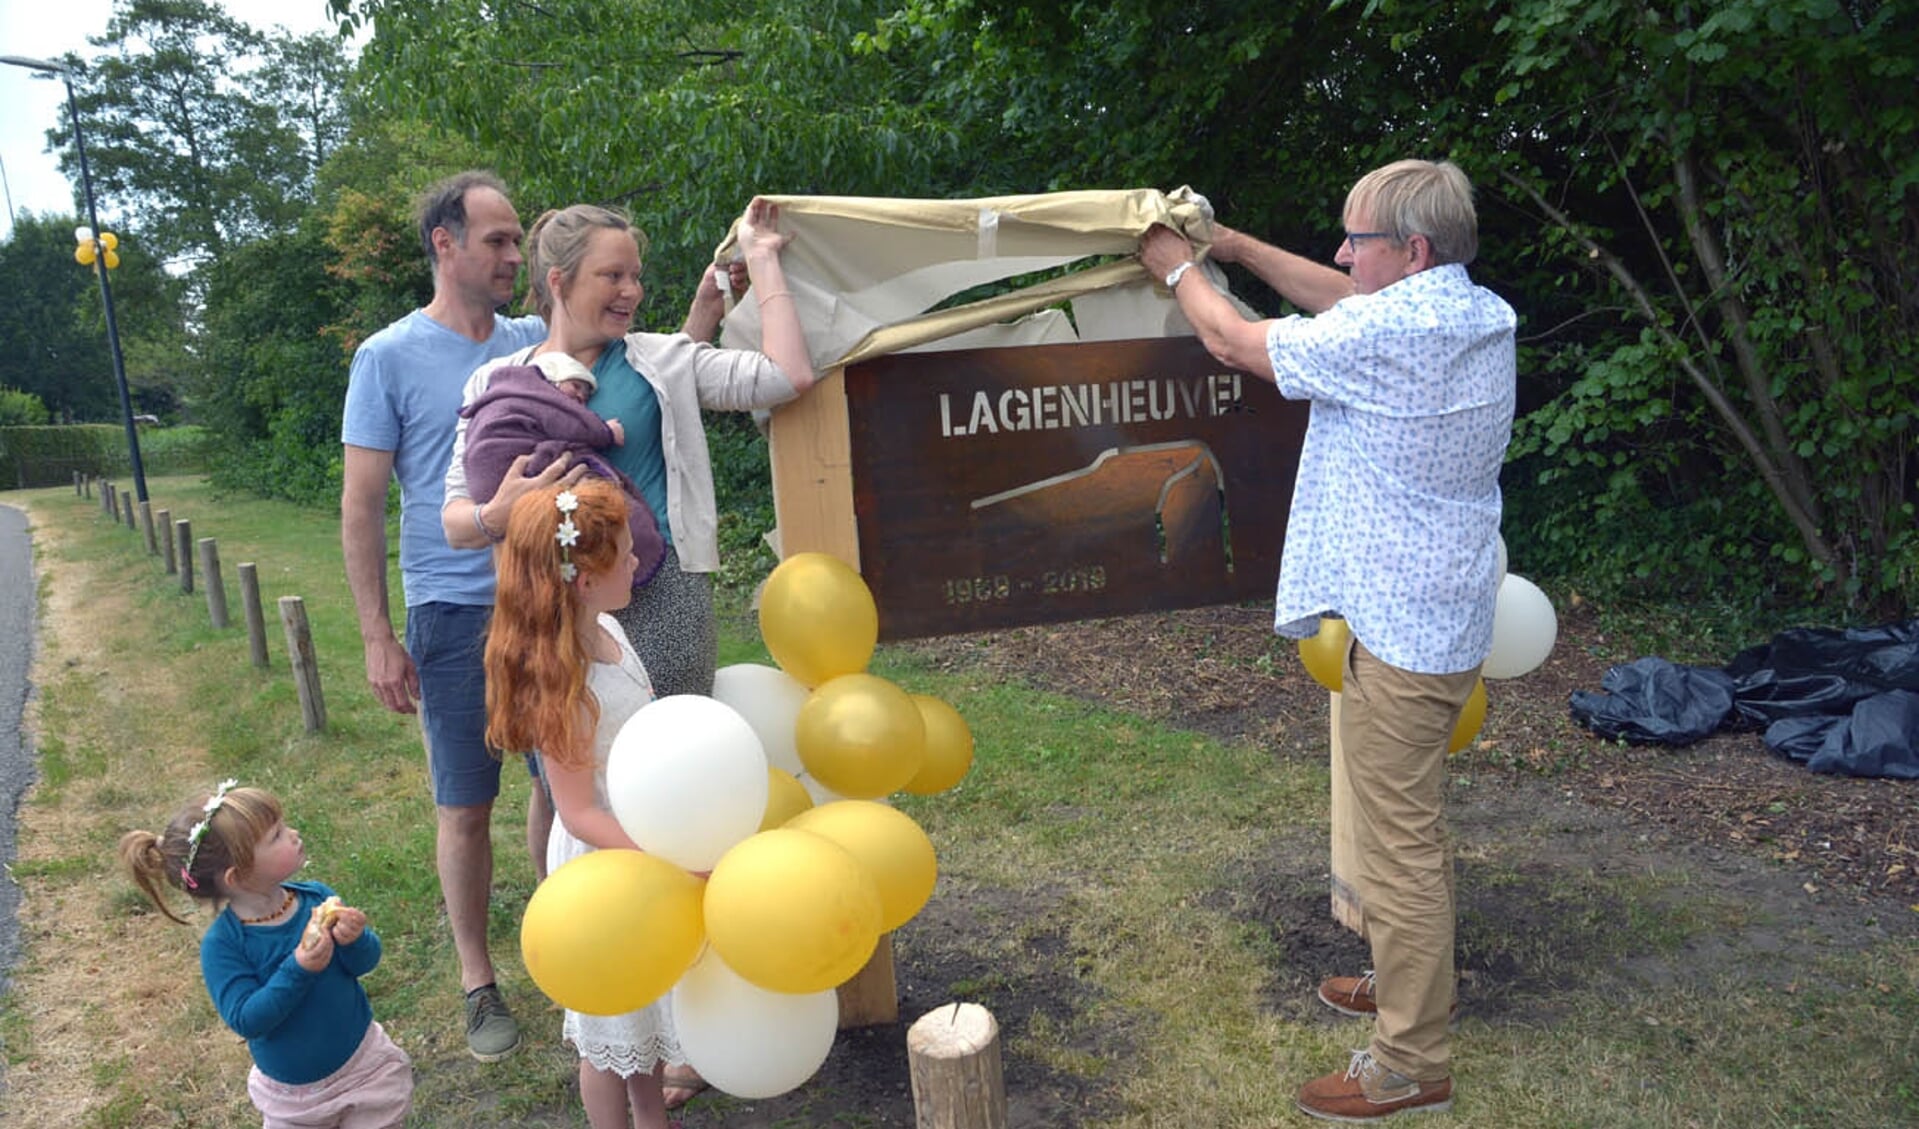 De oudste en de jongste buurtbewoner onthullen het herdenkingsbord (foto: Henk Lunenburg)